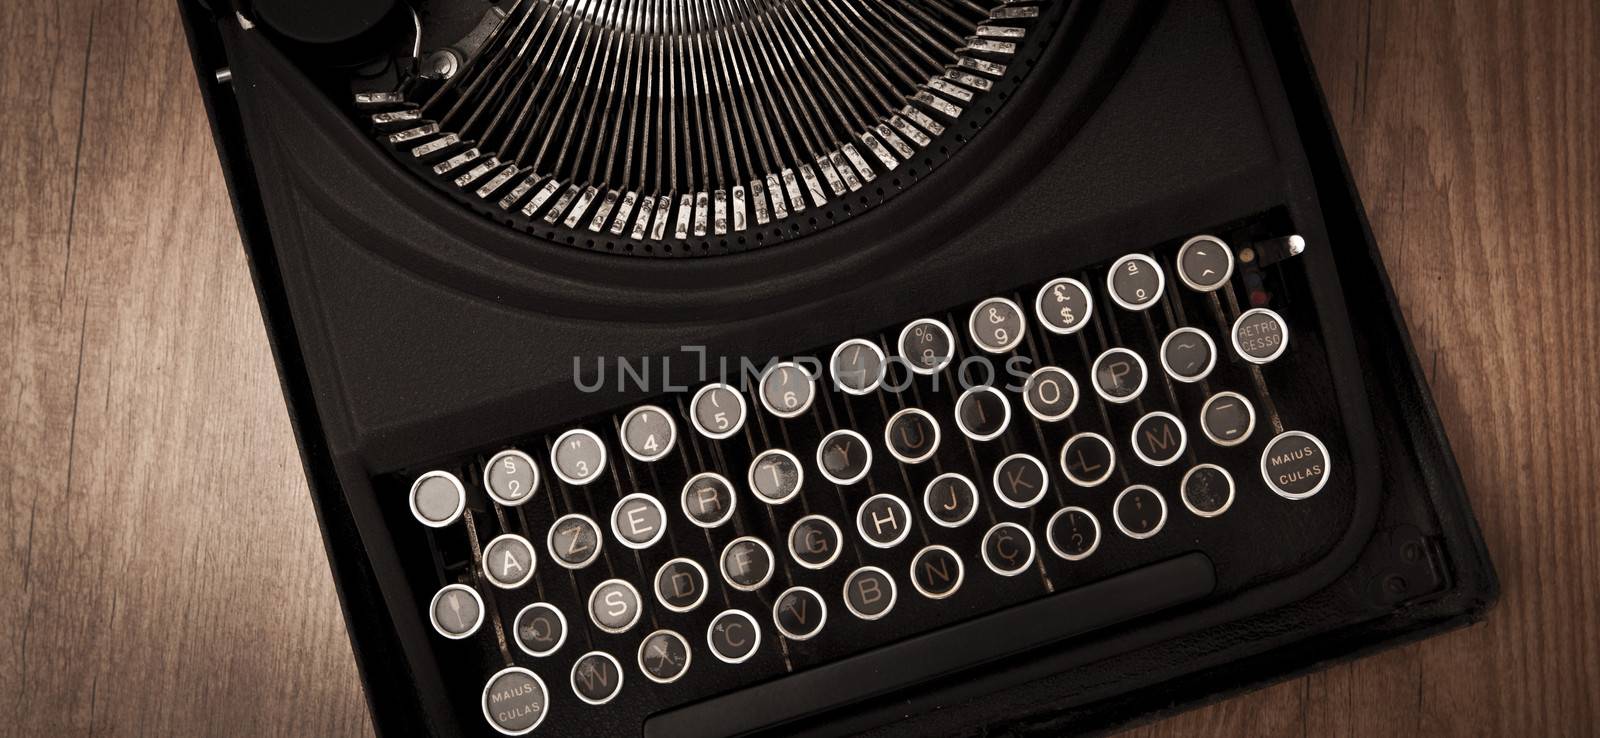 Vintage typewriter by Iko